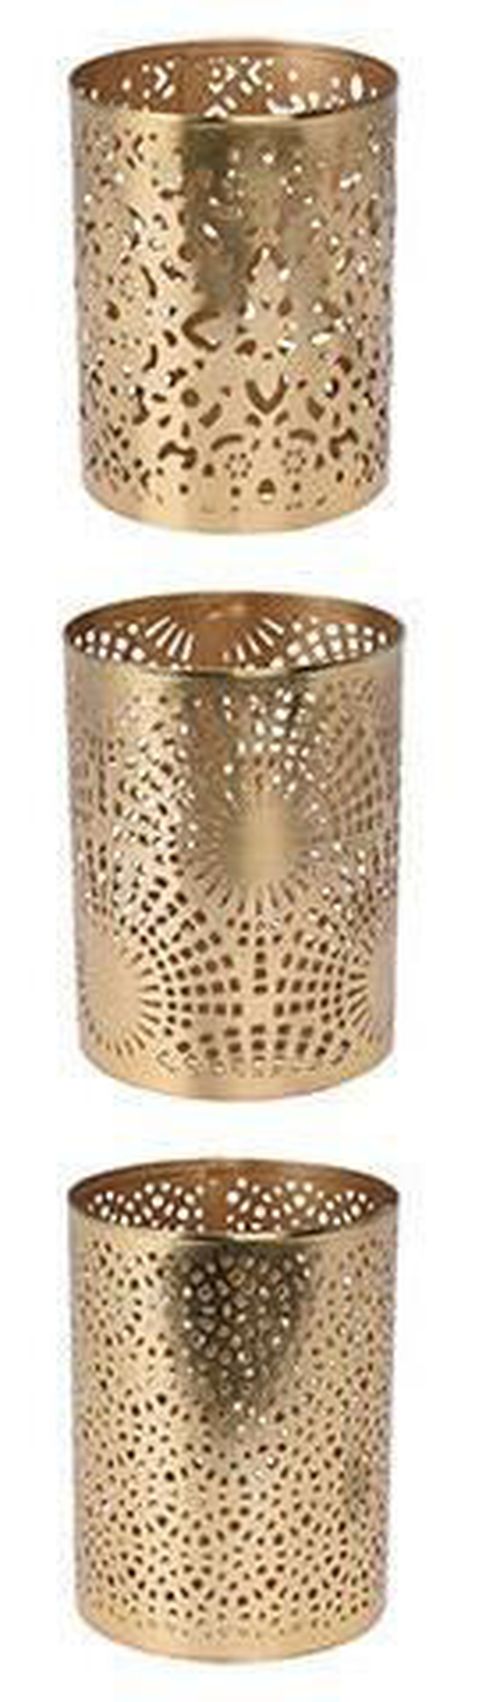 купить Декор Holland 27438 Gold Подсвечник металлический Цилиндр резной D7.5x10cm в Кишинёве 